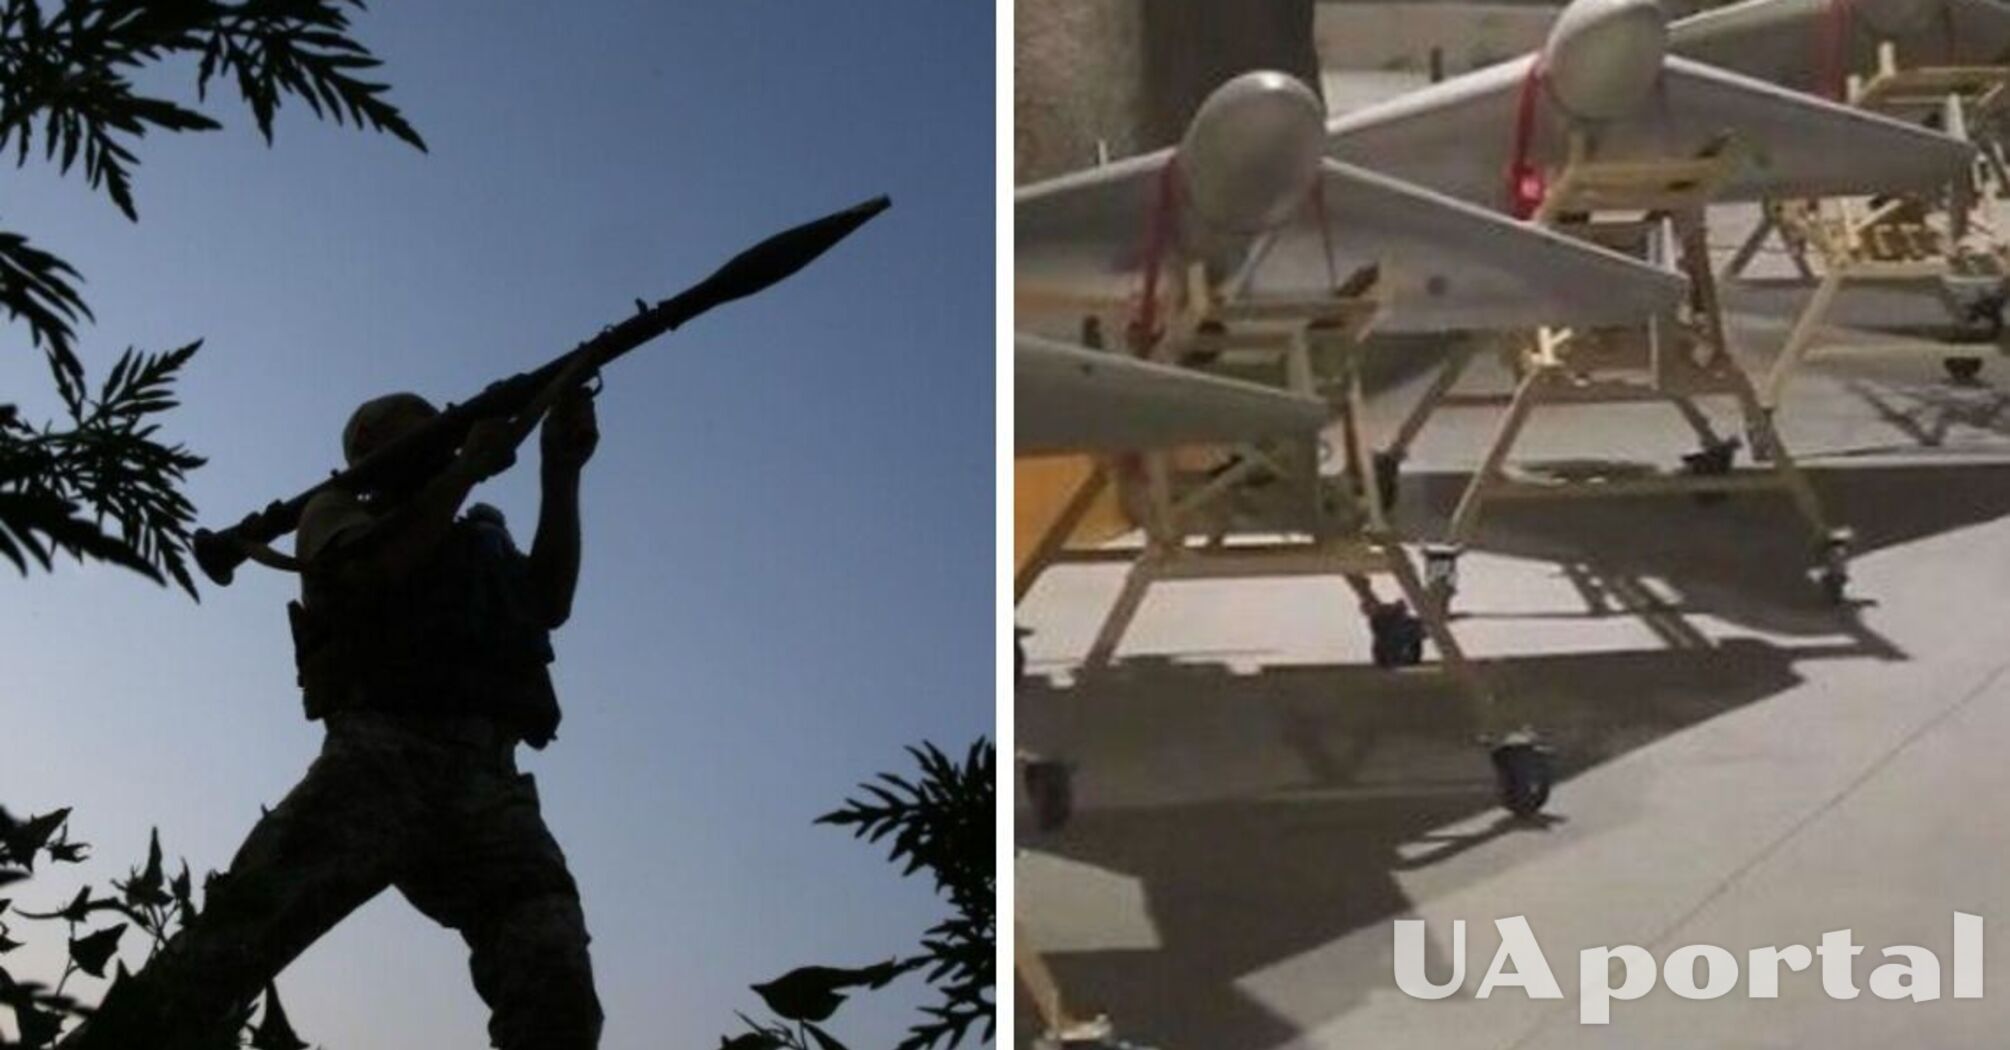  ВСУ научились глушить иранские дроны - Резников